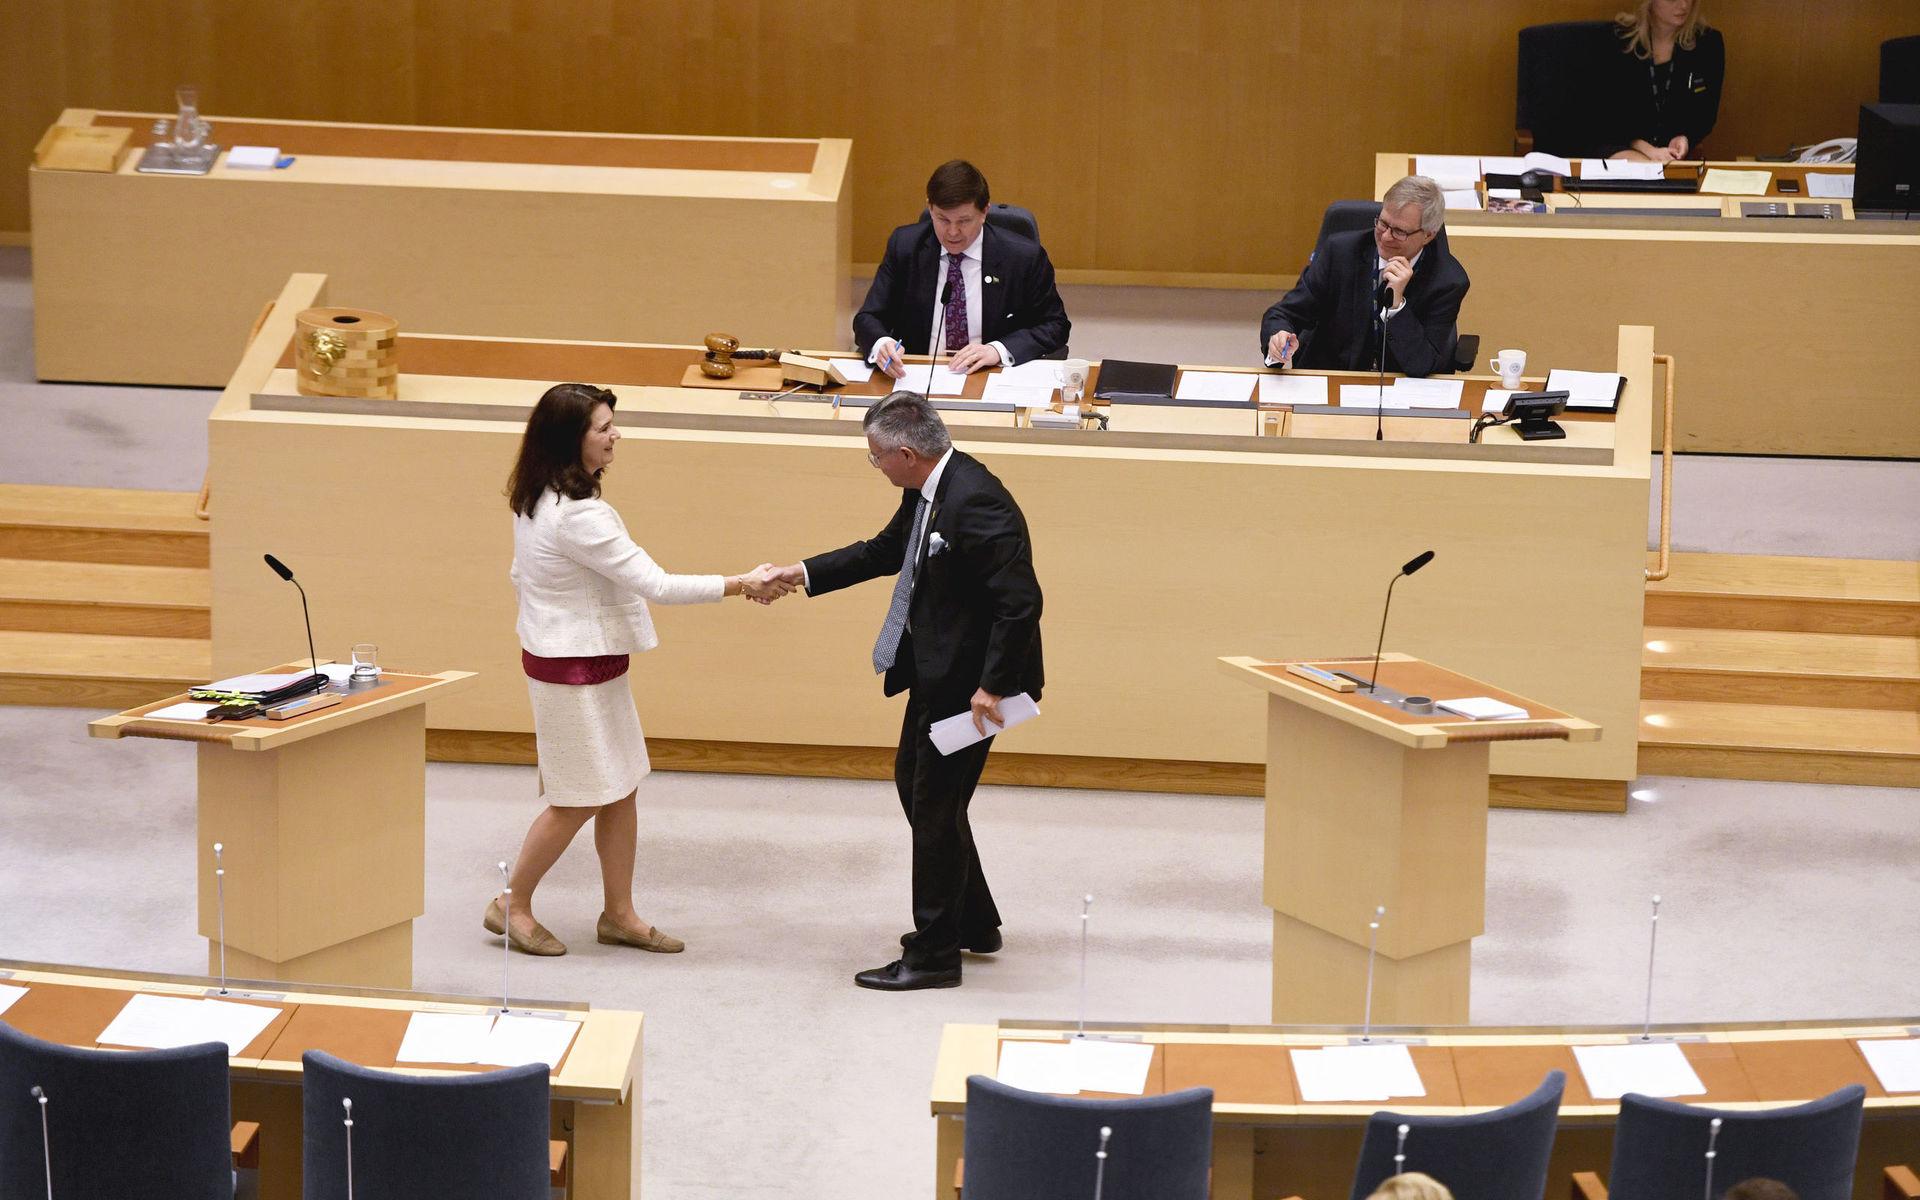 STOCKHOLM 20200212
Utrikesminister Ann Linde (S) och Hans Wallmark (M) debatterar under den utrikespolitiska debatten i i riksdagen i Stockholm.
Foto: Ali Lorestani / TT kod 11950